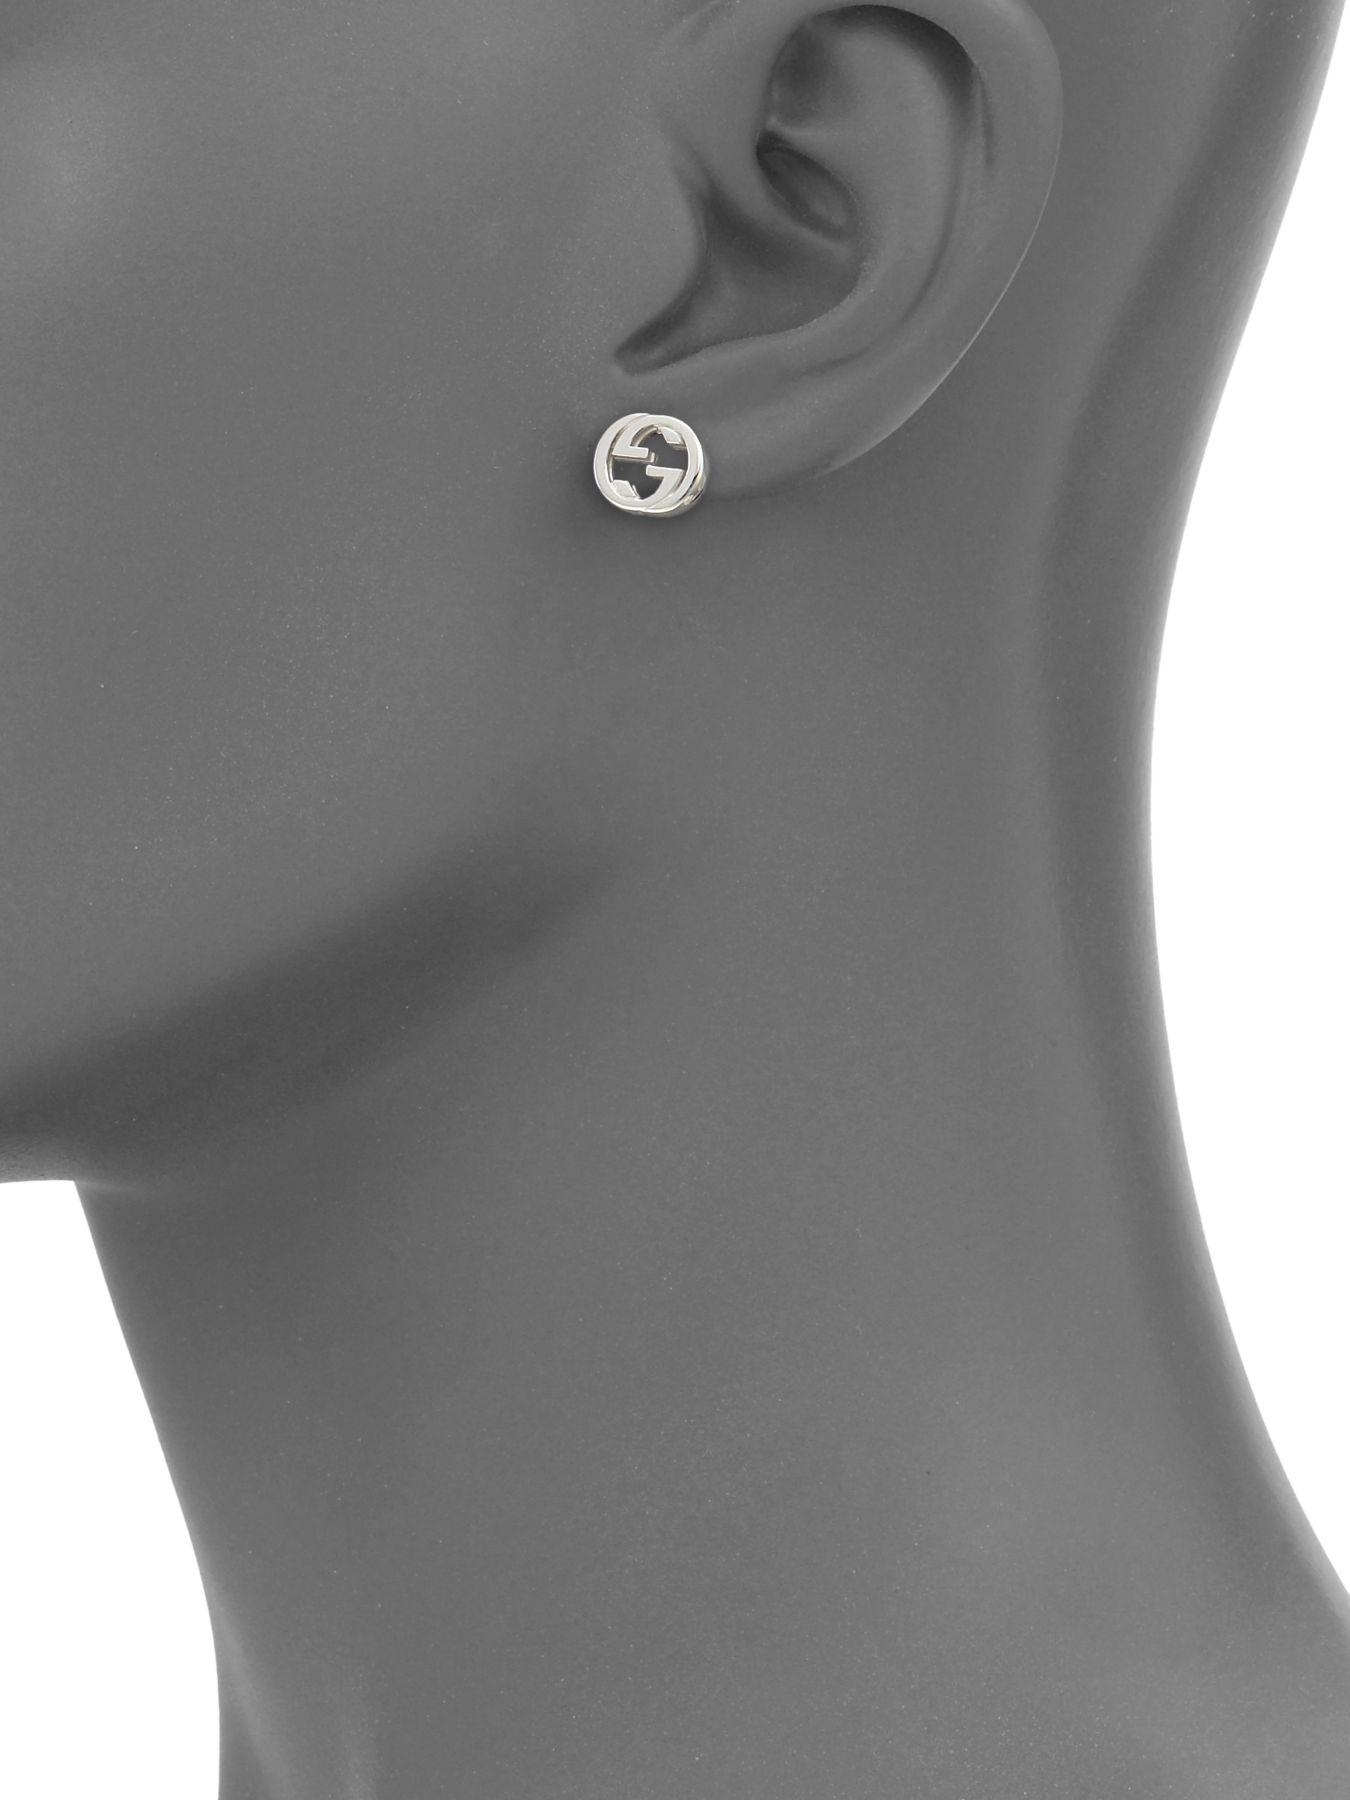 Gucci Silver Interlocking G Stud Earrings in Metallic - Lyst